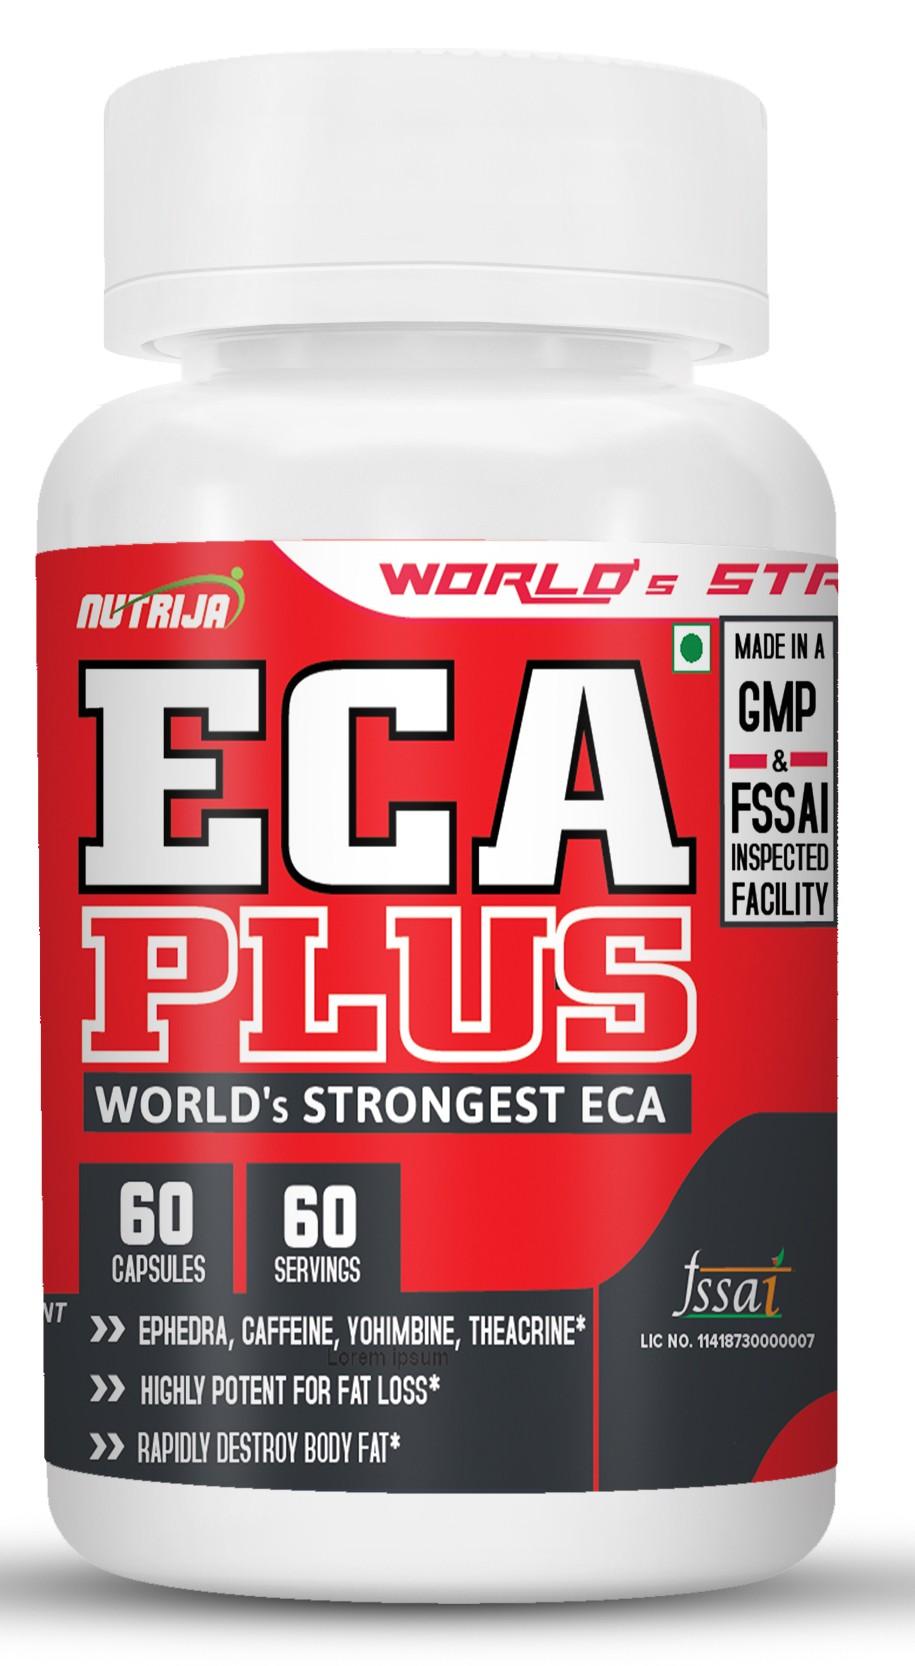 Eca Plus Stack Of Ephedra